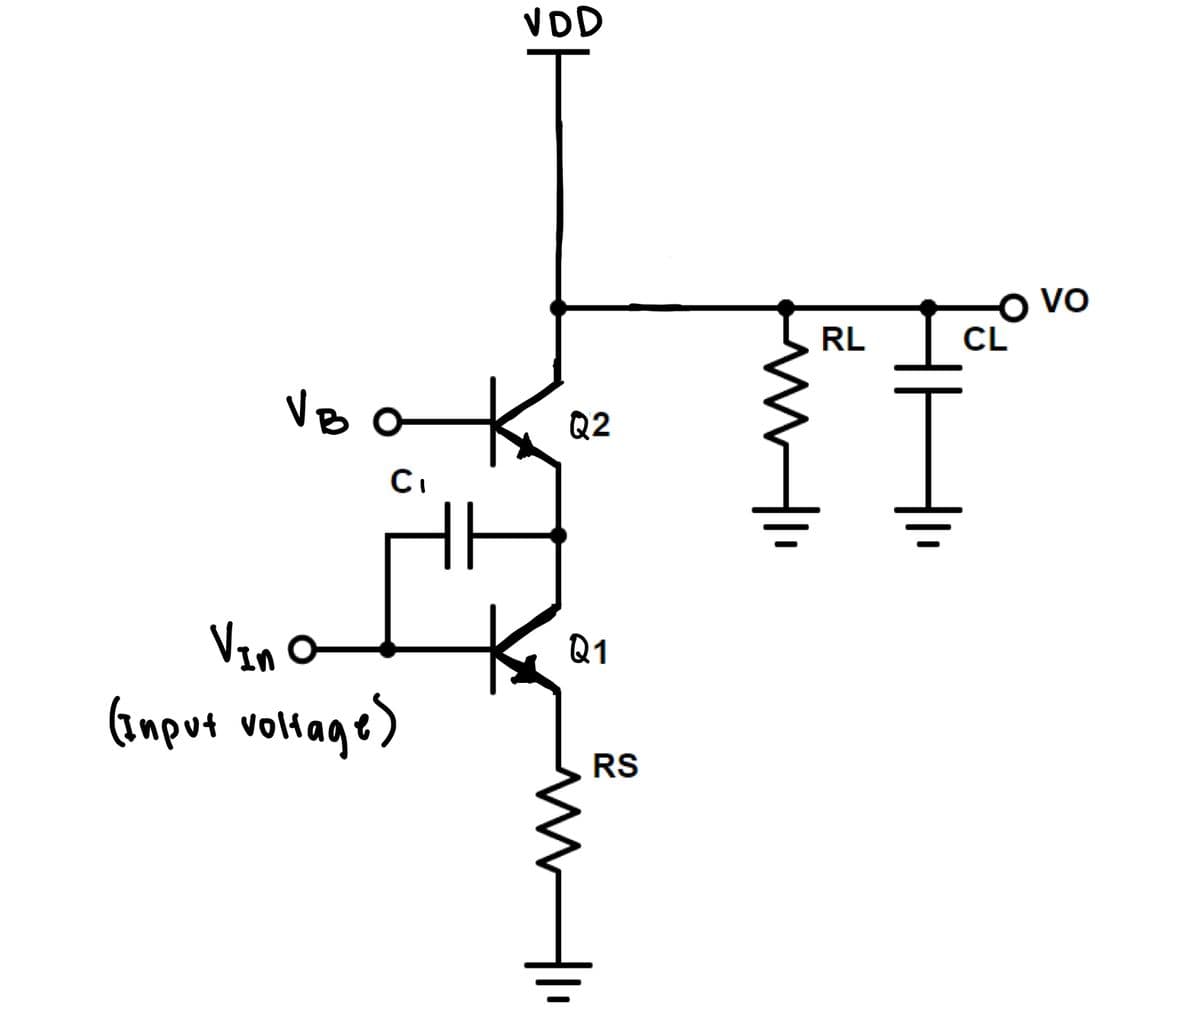 VB
C₁
YE
VDD
Vin O
(Input voltage)
Q2
Q1
RS
RL
O VO
CL